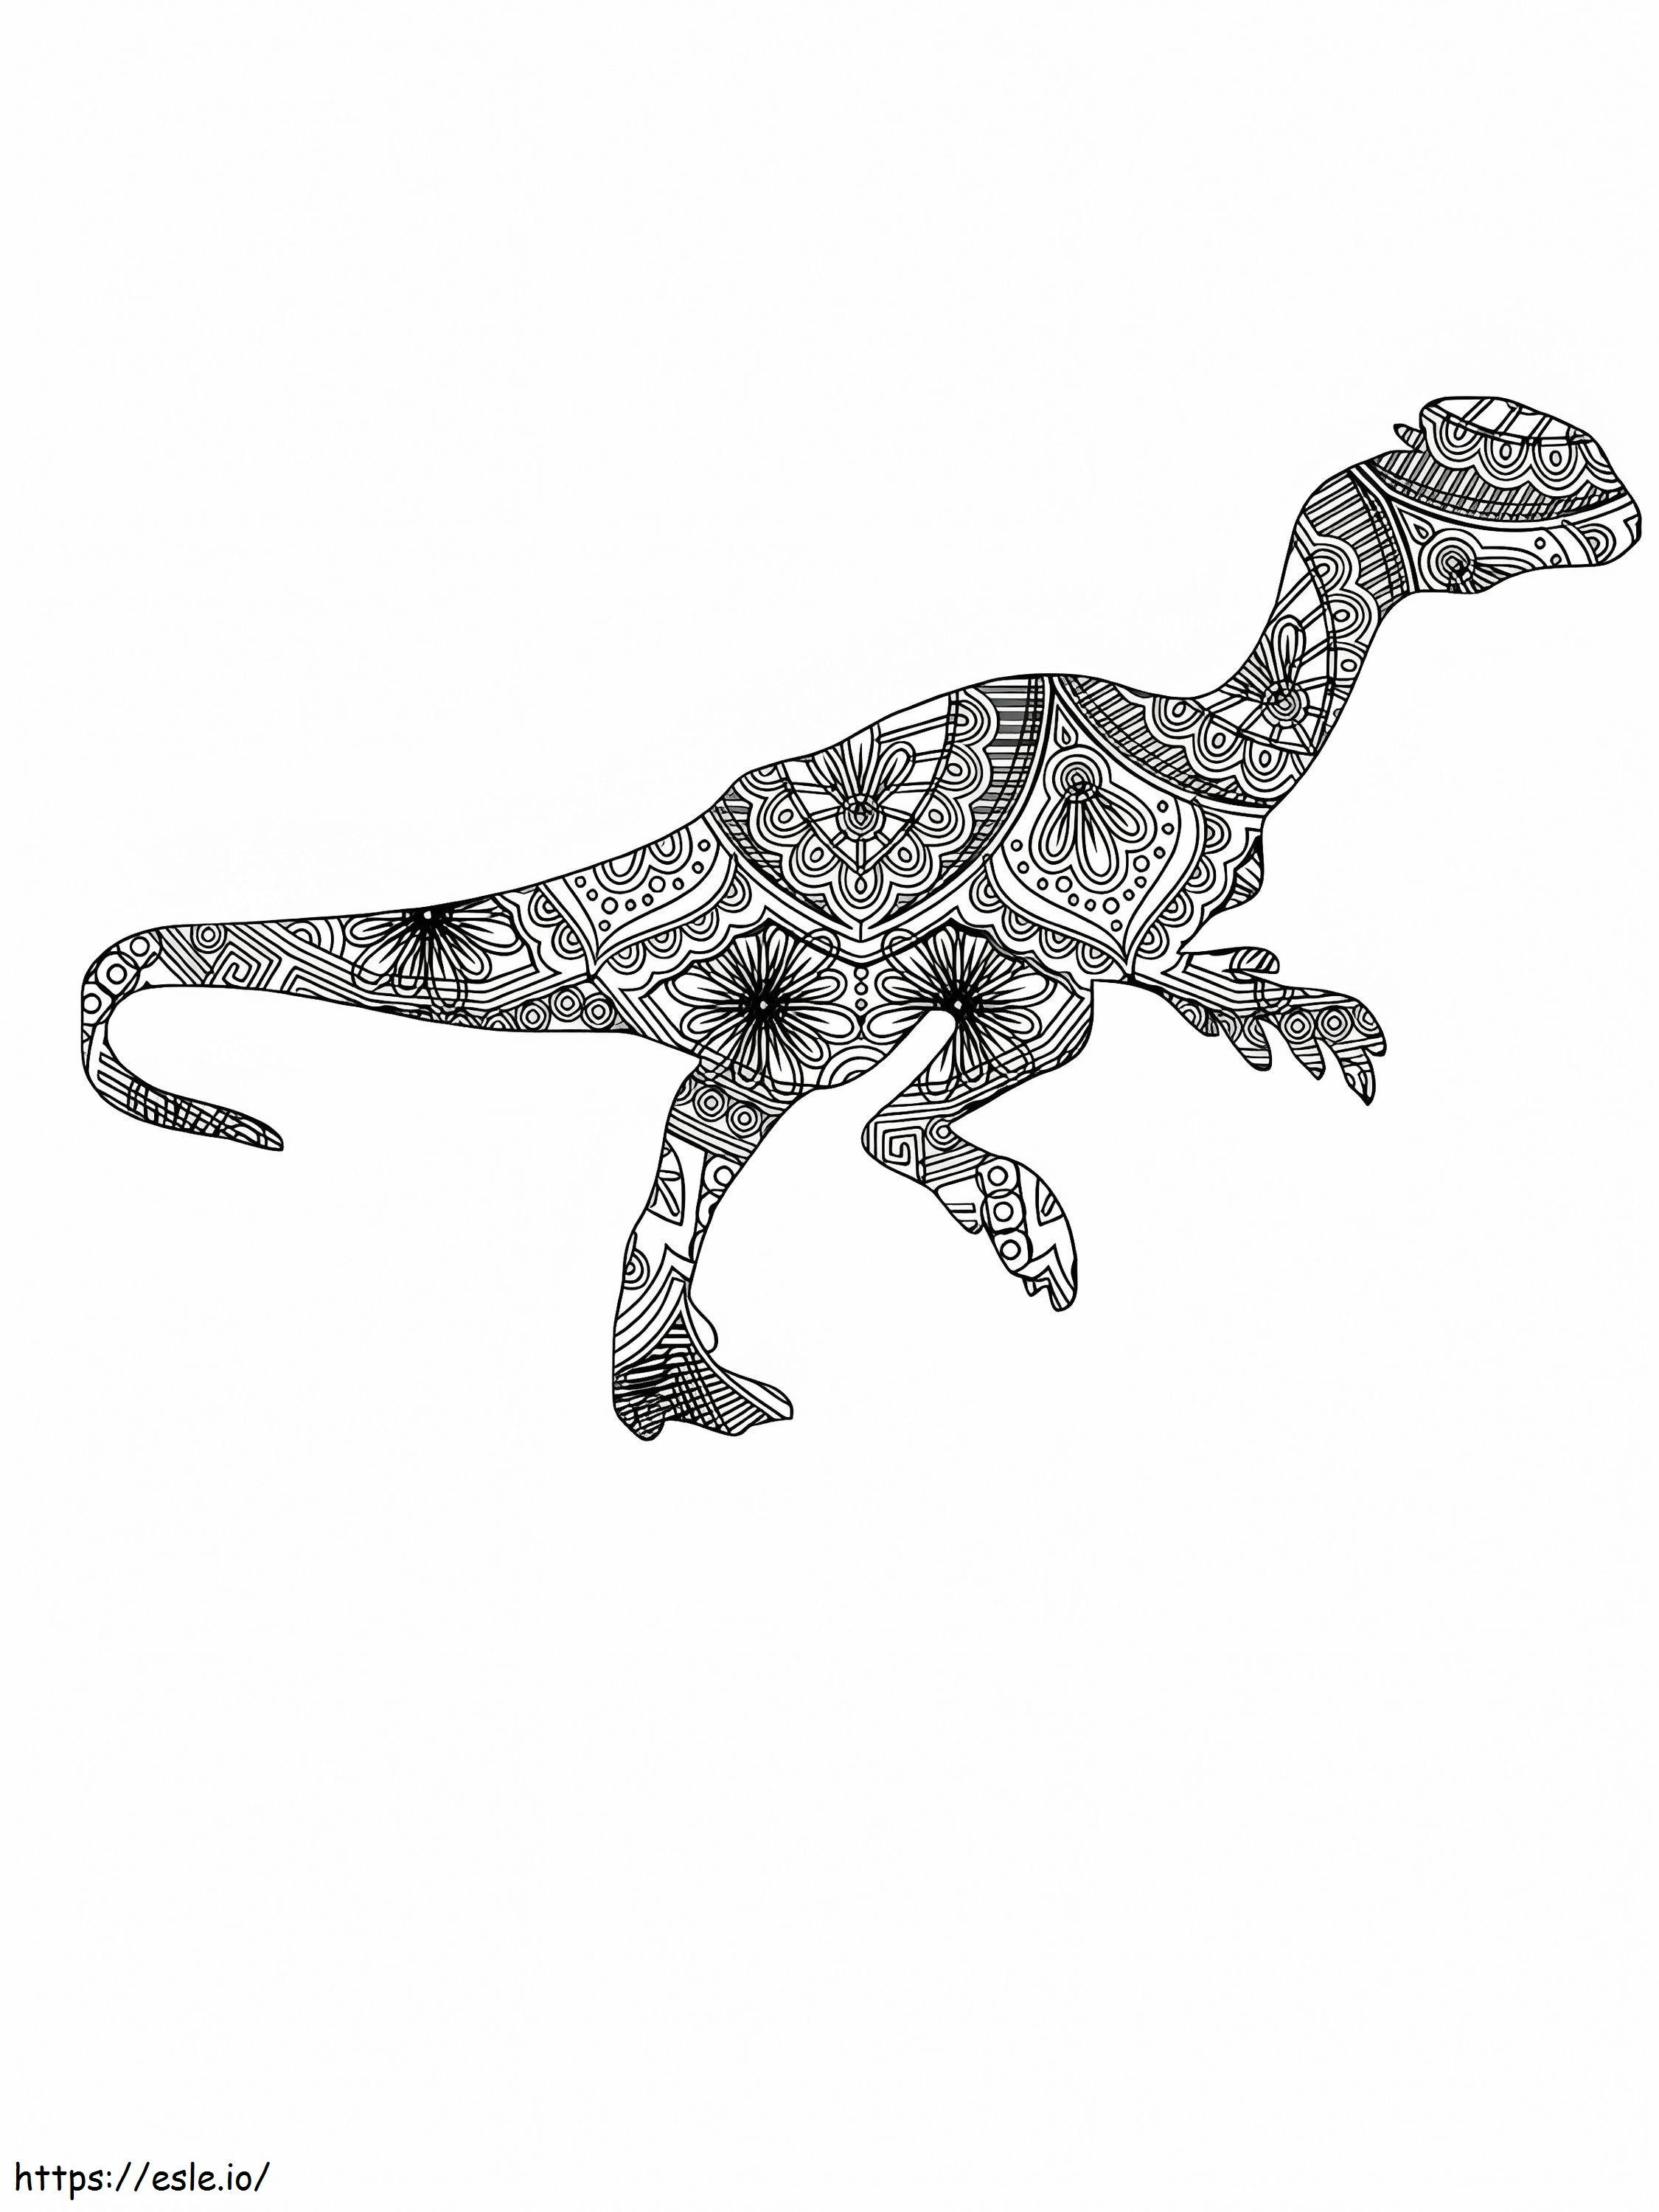 Walking Dinosaur Alebrijes ausmalbilder